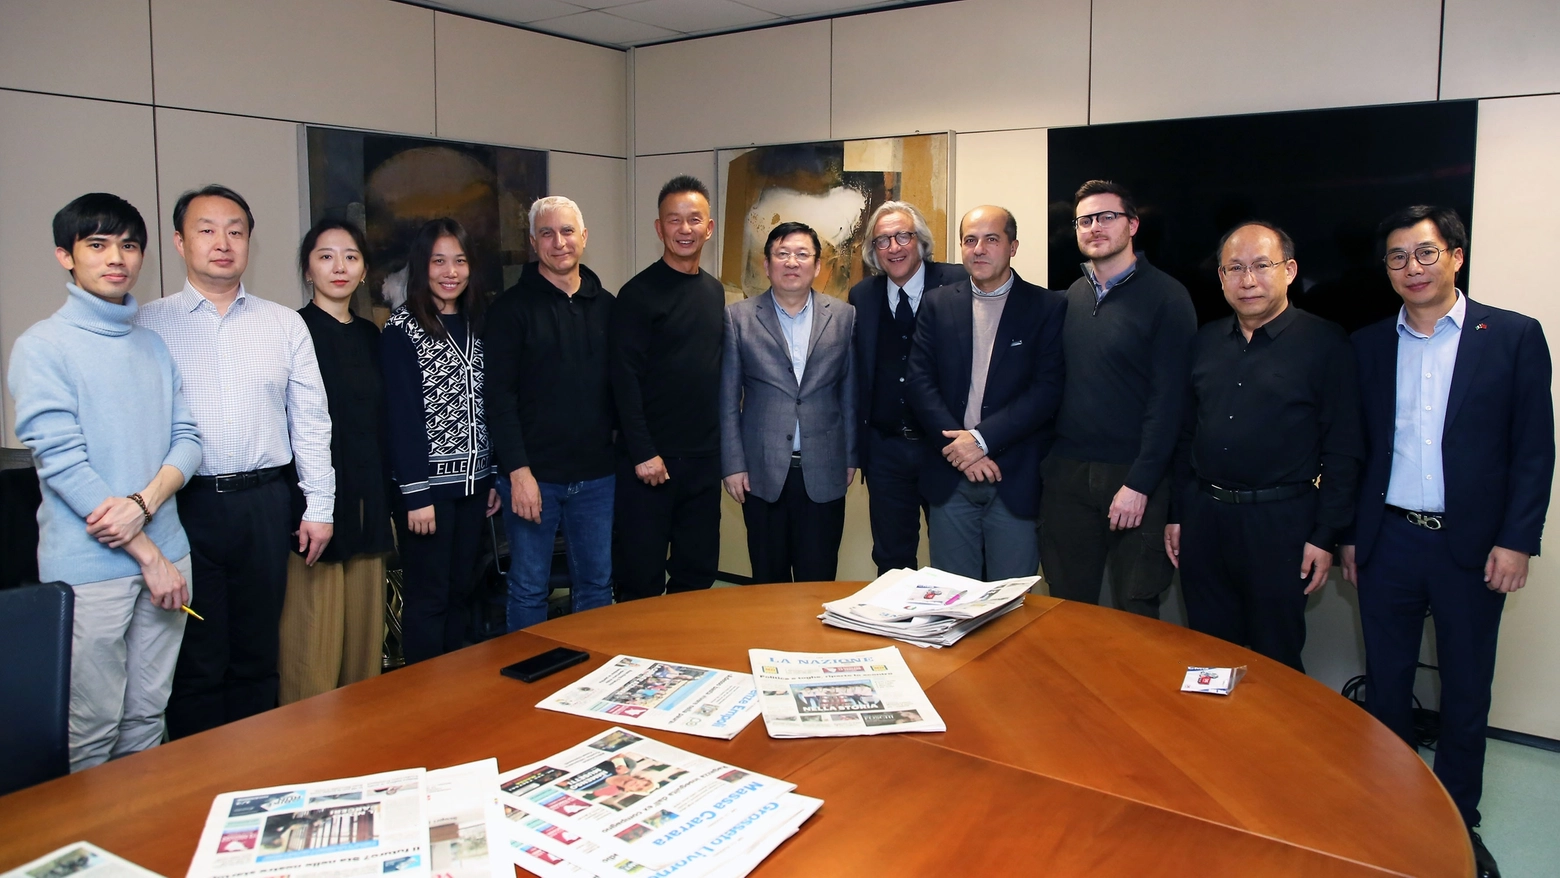 La delegazione di CMG-China Media Group in visita alla sede centrale de La Nazione a Firenze (Foto Marco Mori / New Press Photo)